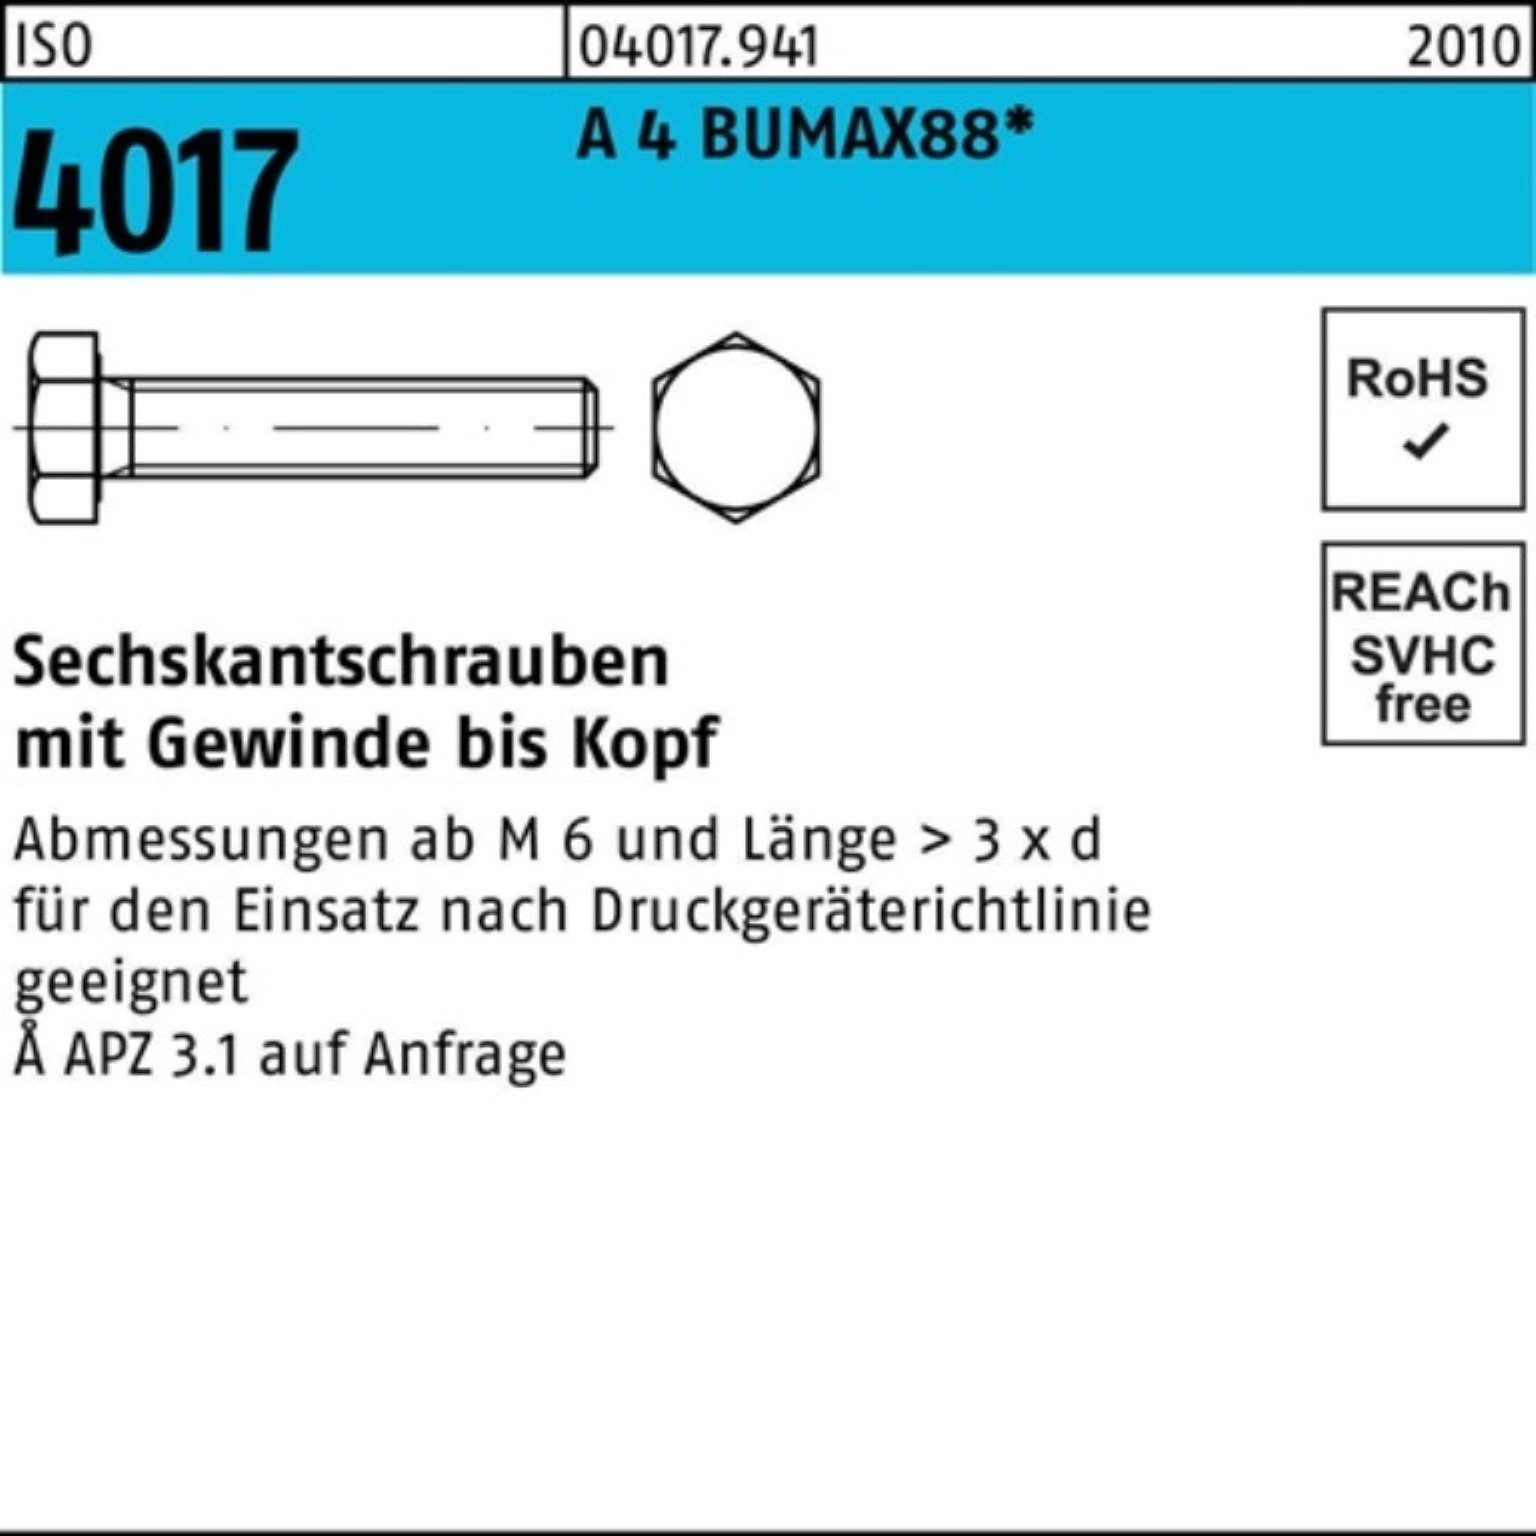 Bufab Sechskantschraube 100er Pack Sechskantschraube ISO 4017 VG M8x 40 A 4 BUMAX88 50 Stück